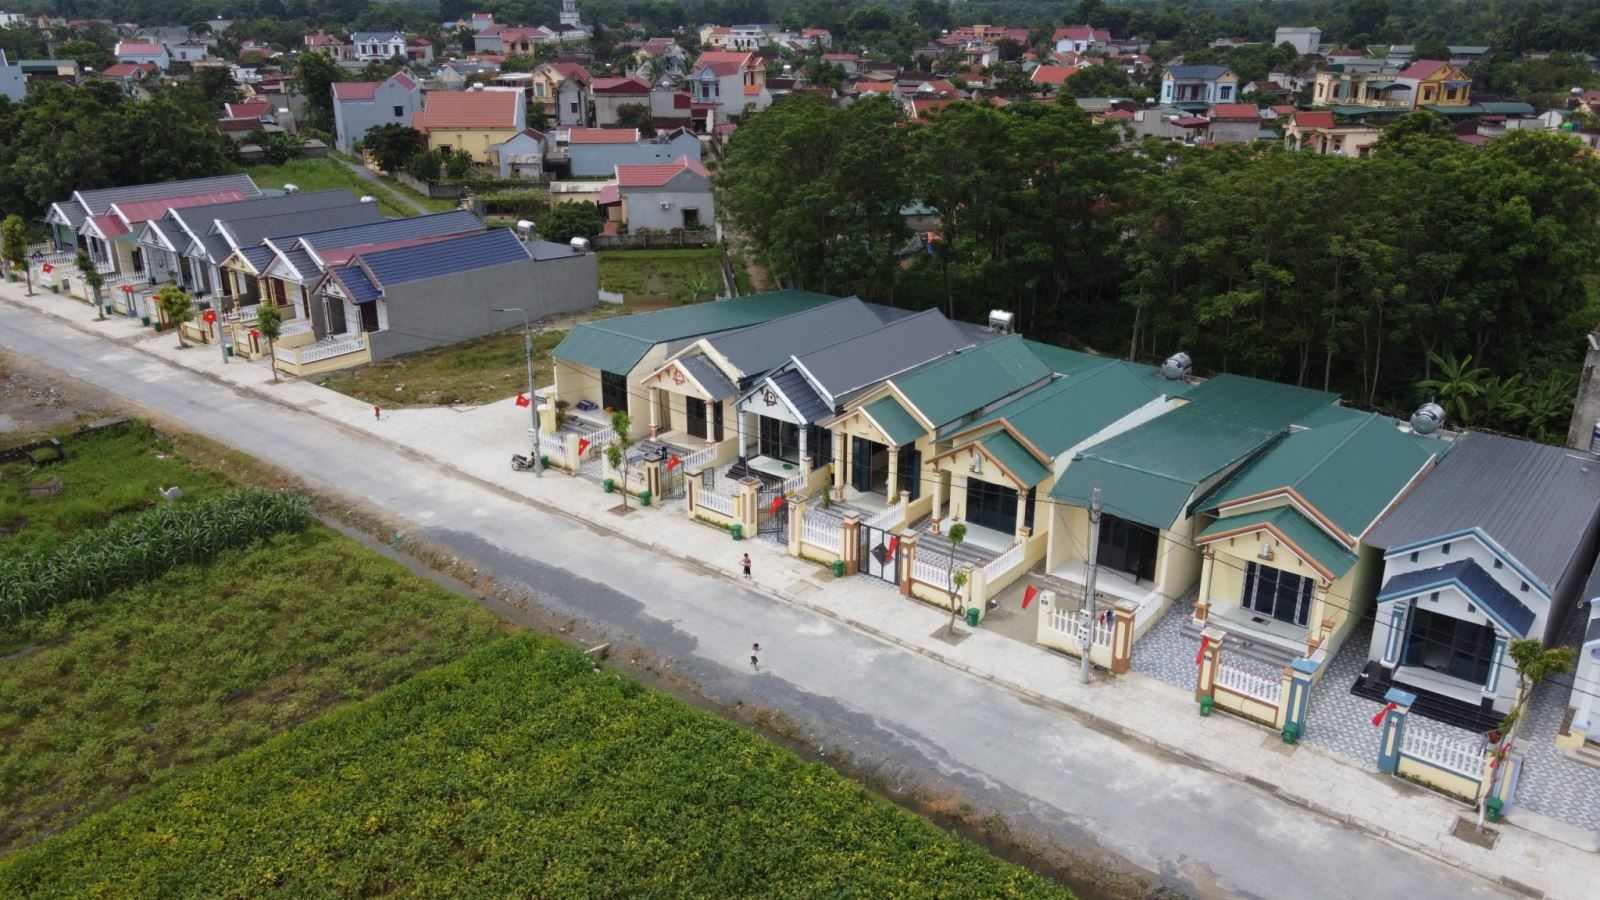 28 căn nhà tại thôn Lam Đạt, xã Thiệu Vũ, huyện Thiệu Hóa được sự chung tay của của các cấp, ngành trên địa bàn tỉnh ủng hỗ xây dựng